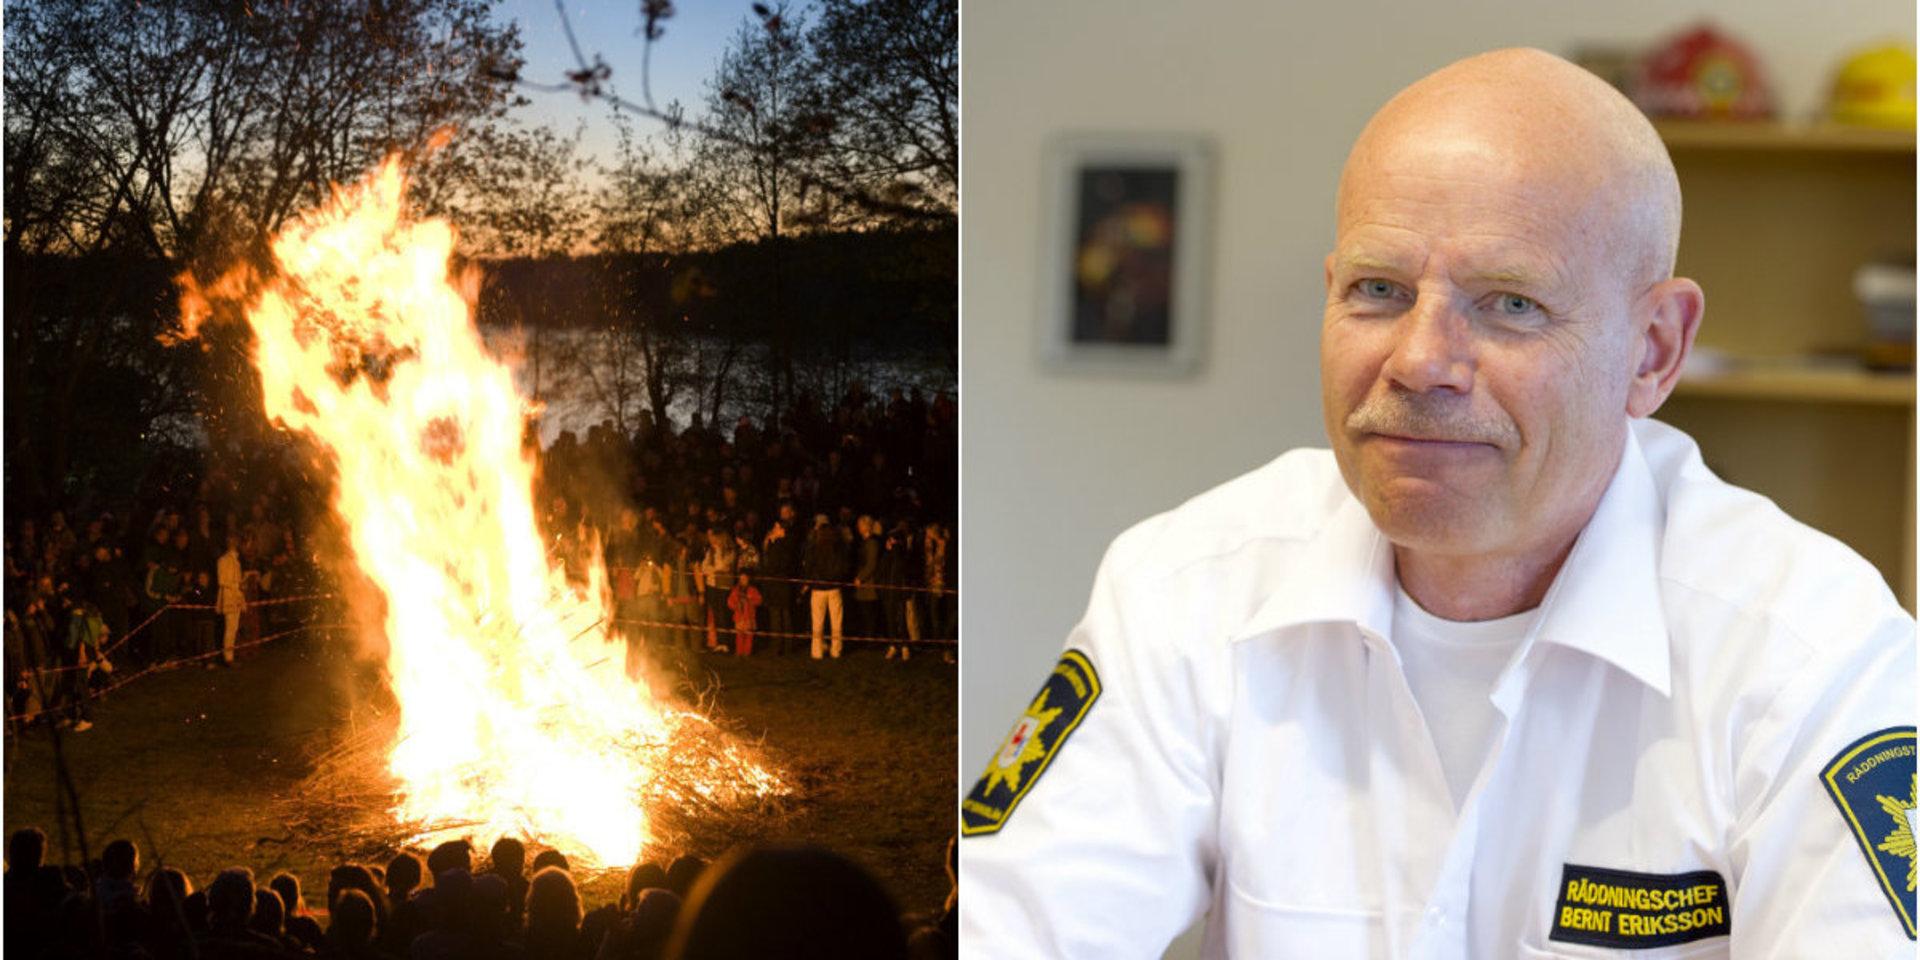 Bernt Eriksson, räddningschef Mitt Bohuslän, avråder att elda i närheten av skog och i trädgårdar nu när det är torrt i naturen.